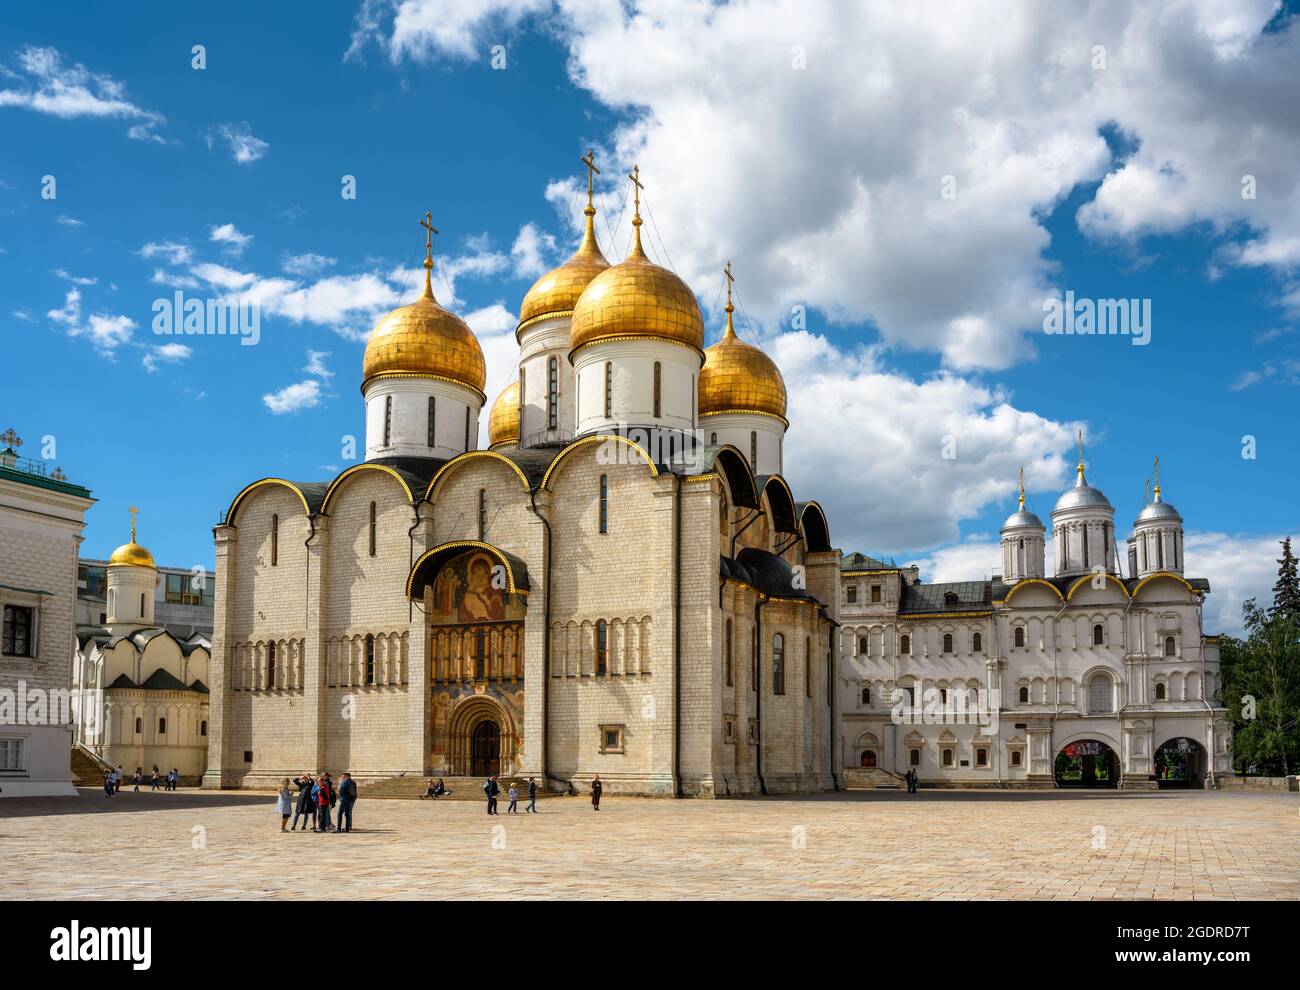 Moskau - 2. Juni 2021: Dormitionskathedrale (Himmelfahrt) im Moskauer Kreml, Russland. Alte russisch-orthodoxe Kirche ist berühmte Touristenattraktion von Moskau. Stockfoto